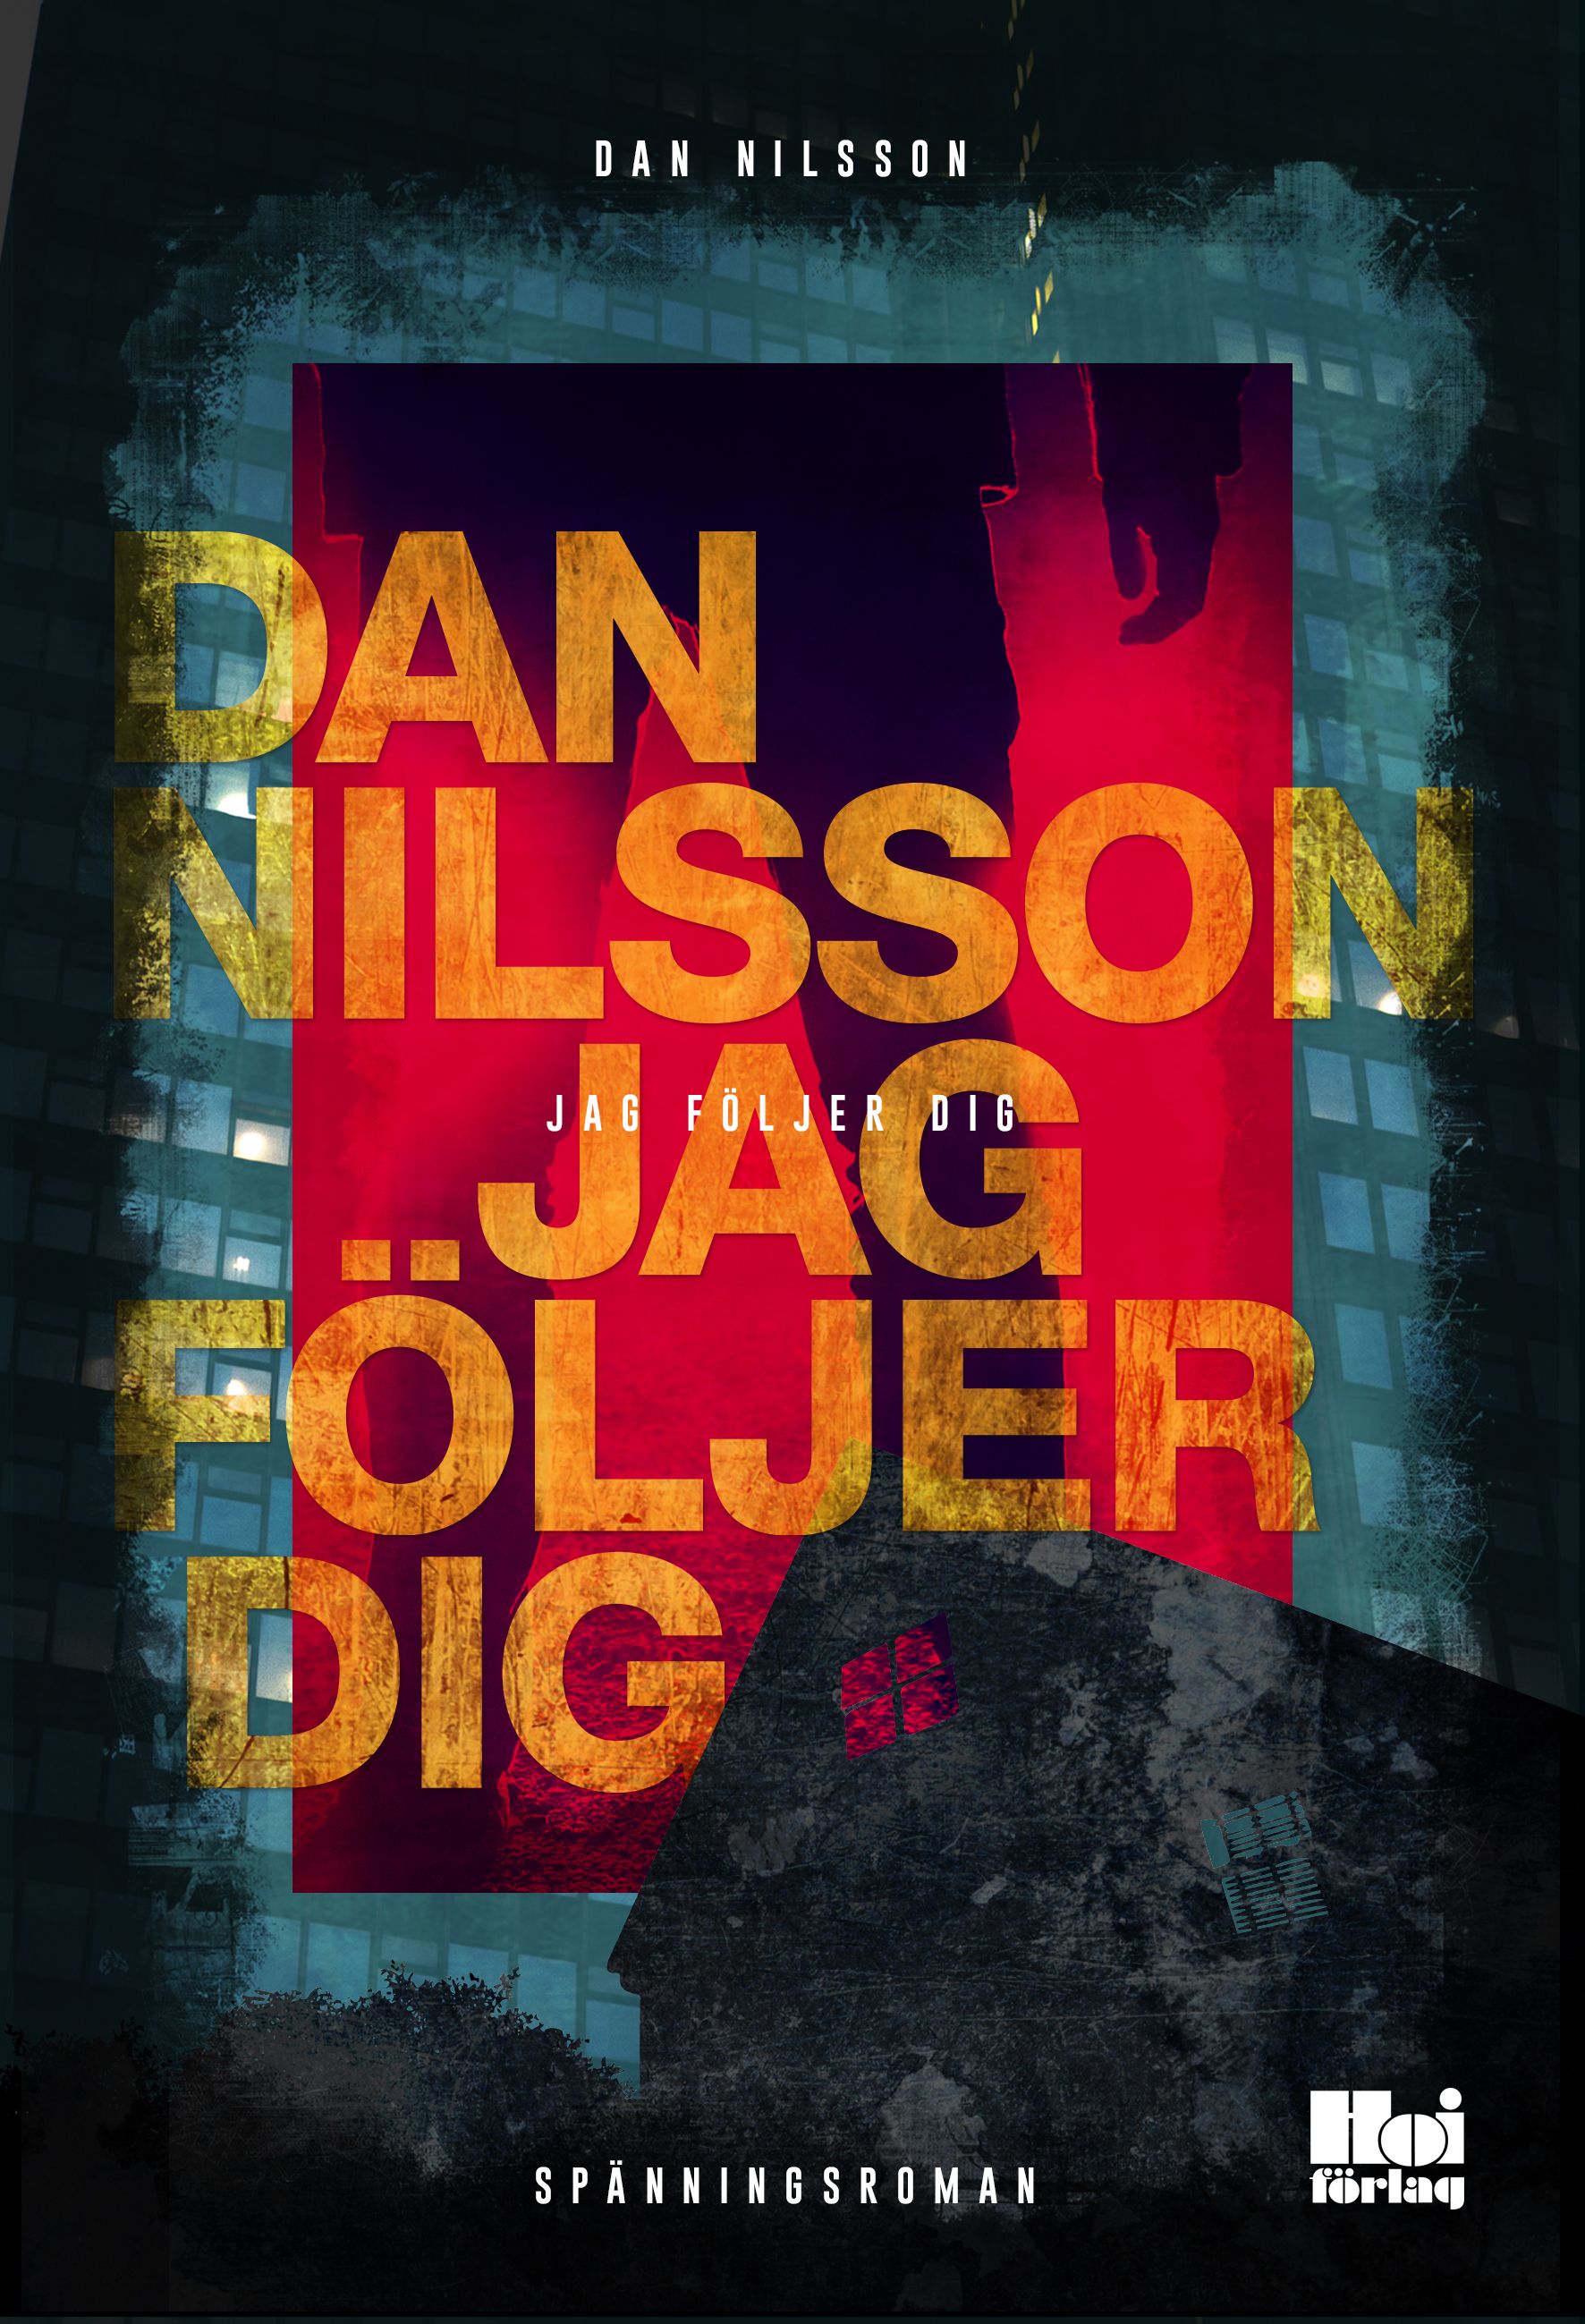 Jag följer dig, e-bok av Dan Nilsson